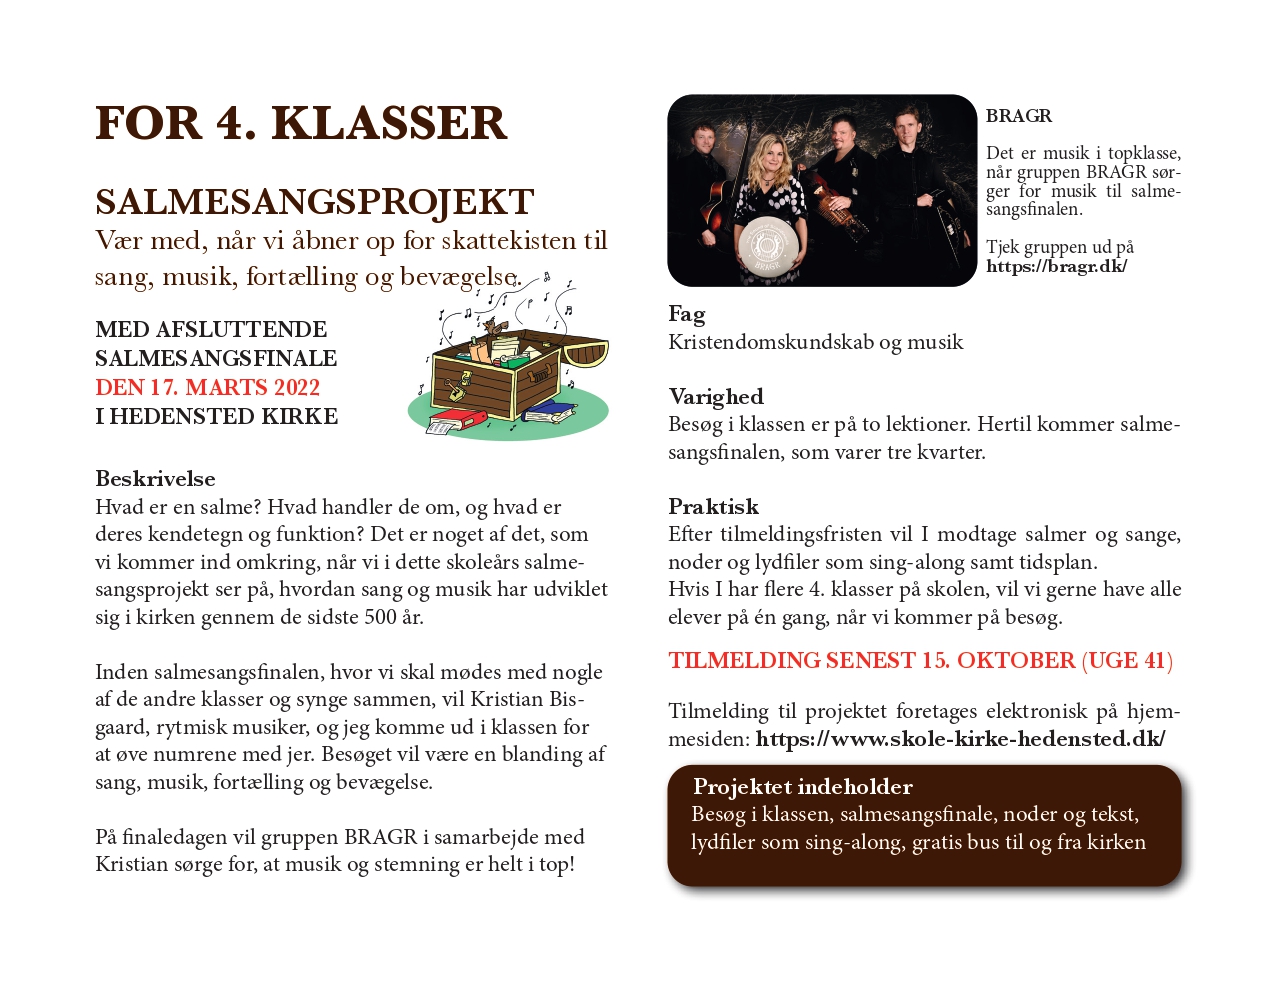 Salmesangsprojekt for 4. klasser | SKOLE-KIRKE-HEDENSTED